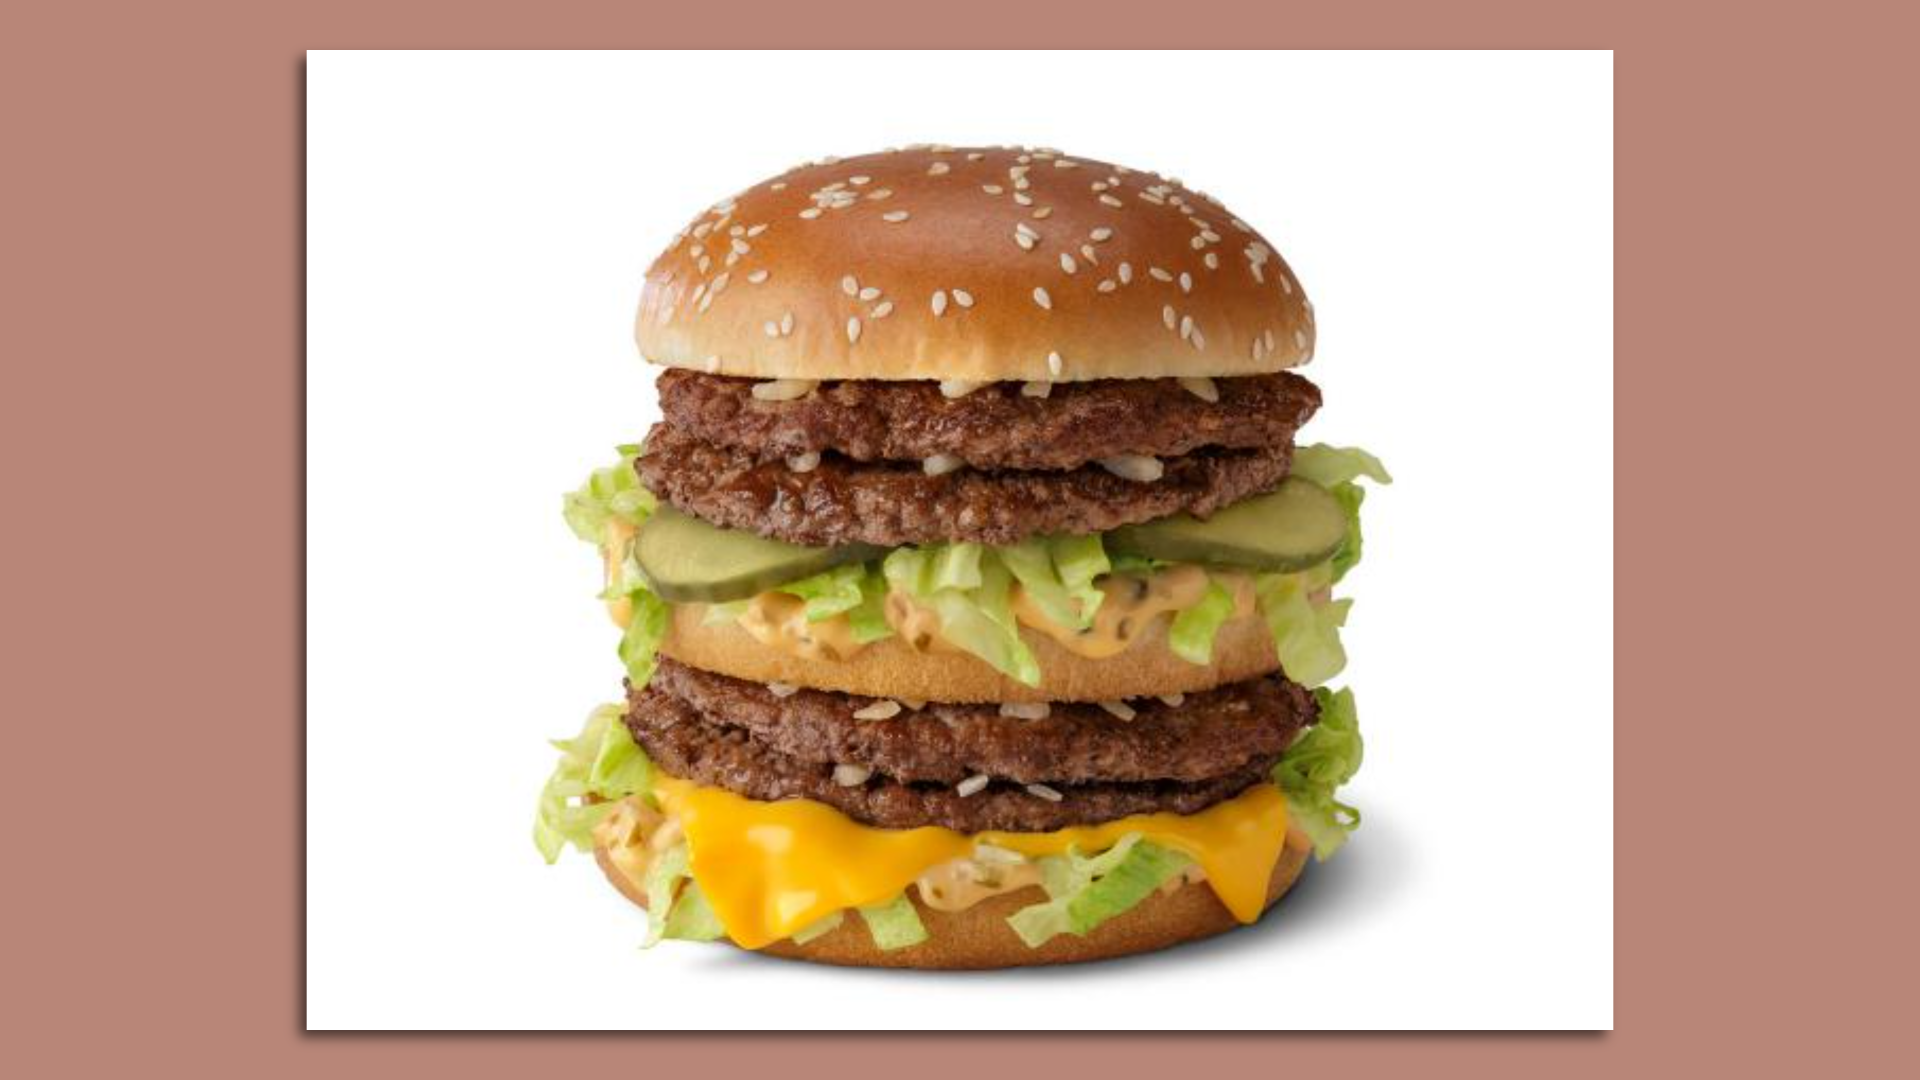 McDonald's Double Big Mac with four burger patties has 780 calories